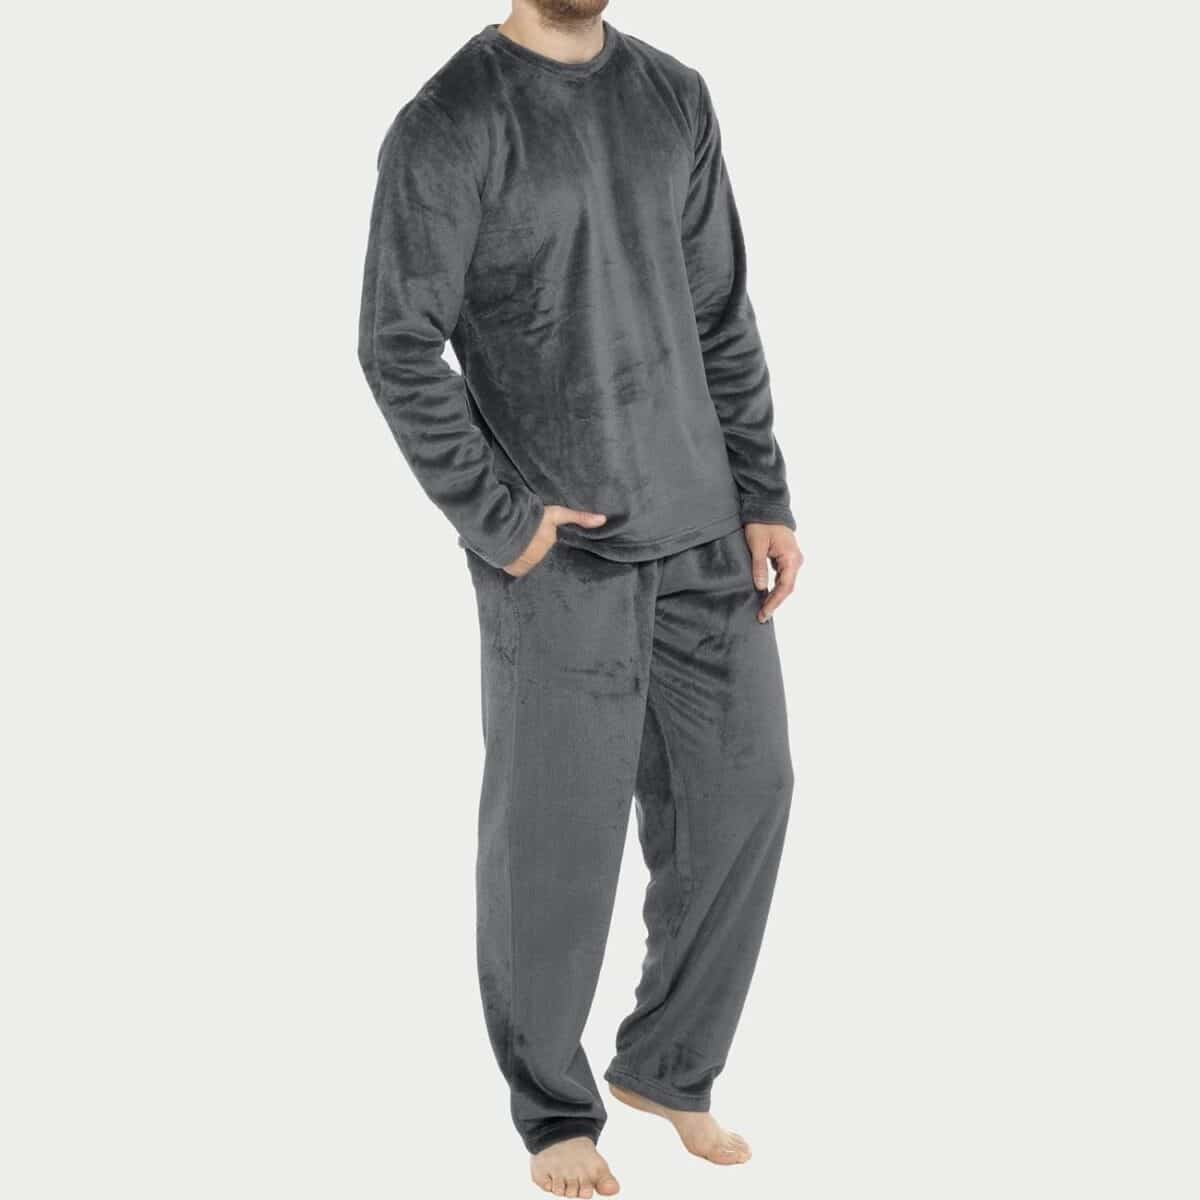 Découvrez la meilleure combinaison pyjama pour garçon : confort et style à la fois !